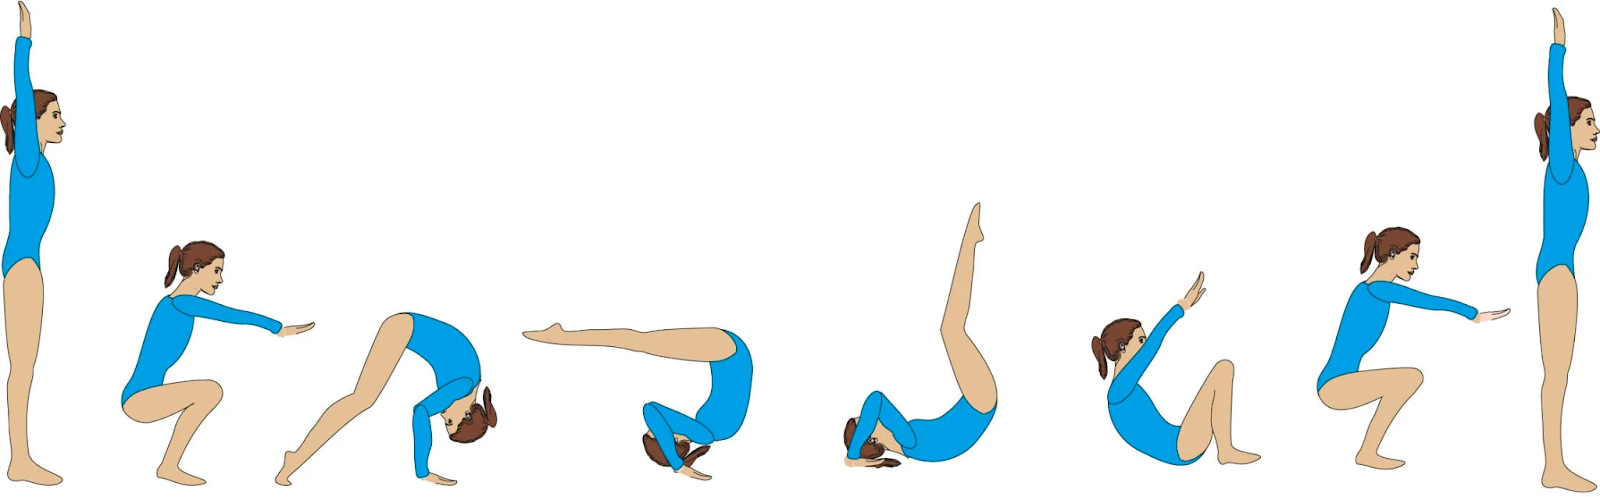 Basic Moves of Gymnastics - Forward Roll